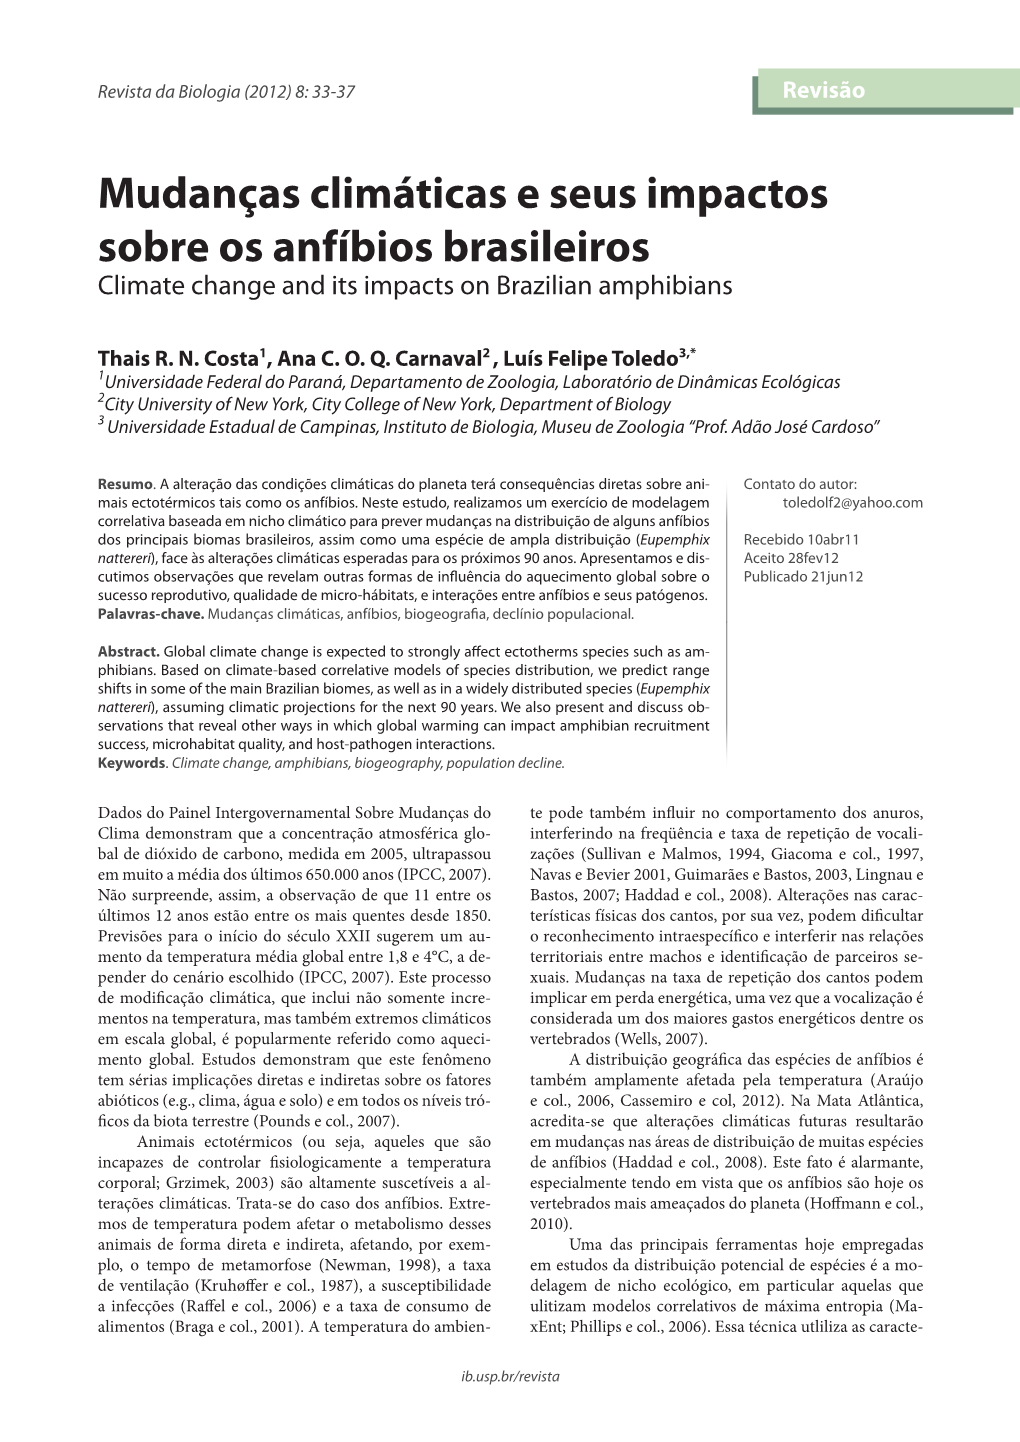 Mudanças Climáticas E Seus Impactos Sobre Os Anfíbios Brasileiros Climate Change and Its Impacts on Brazilian Amphibians